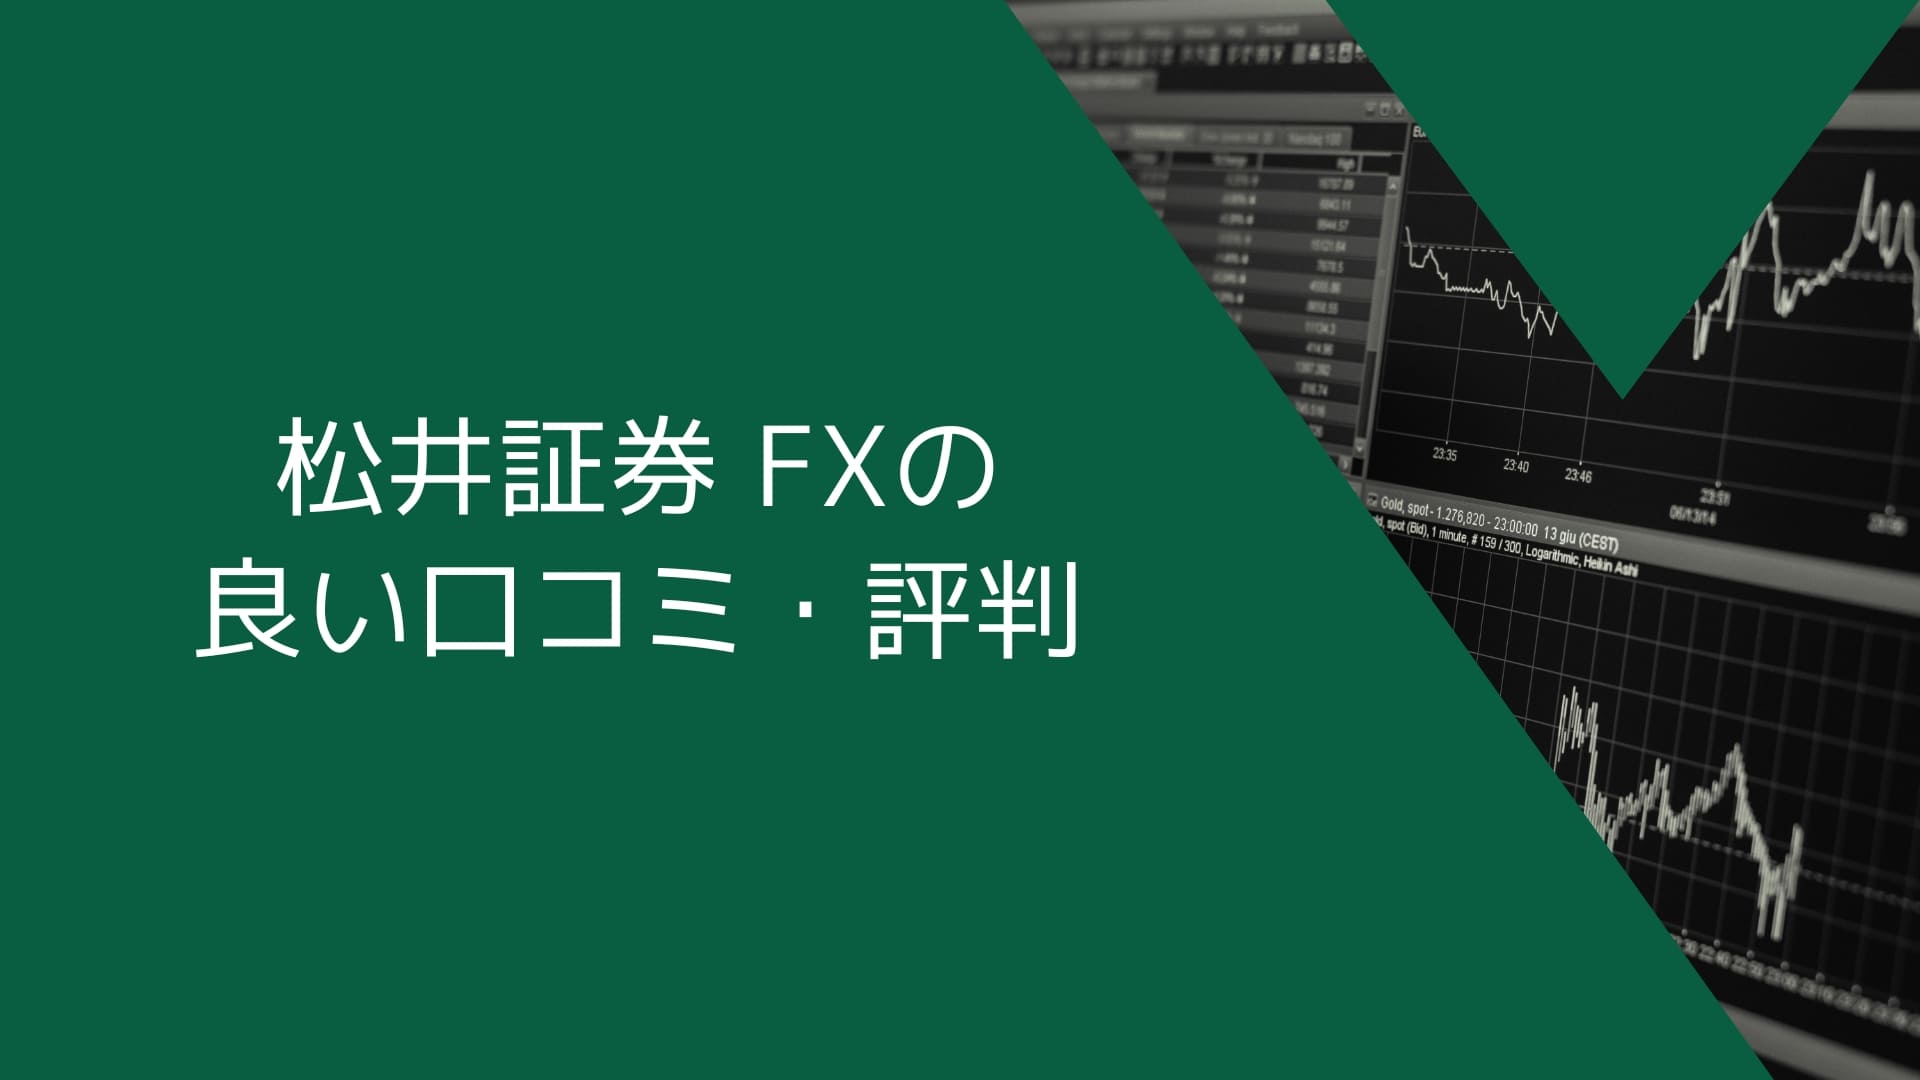 松井証券（MATSUI FX）の良い口コミ・評判